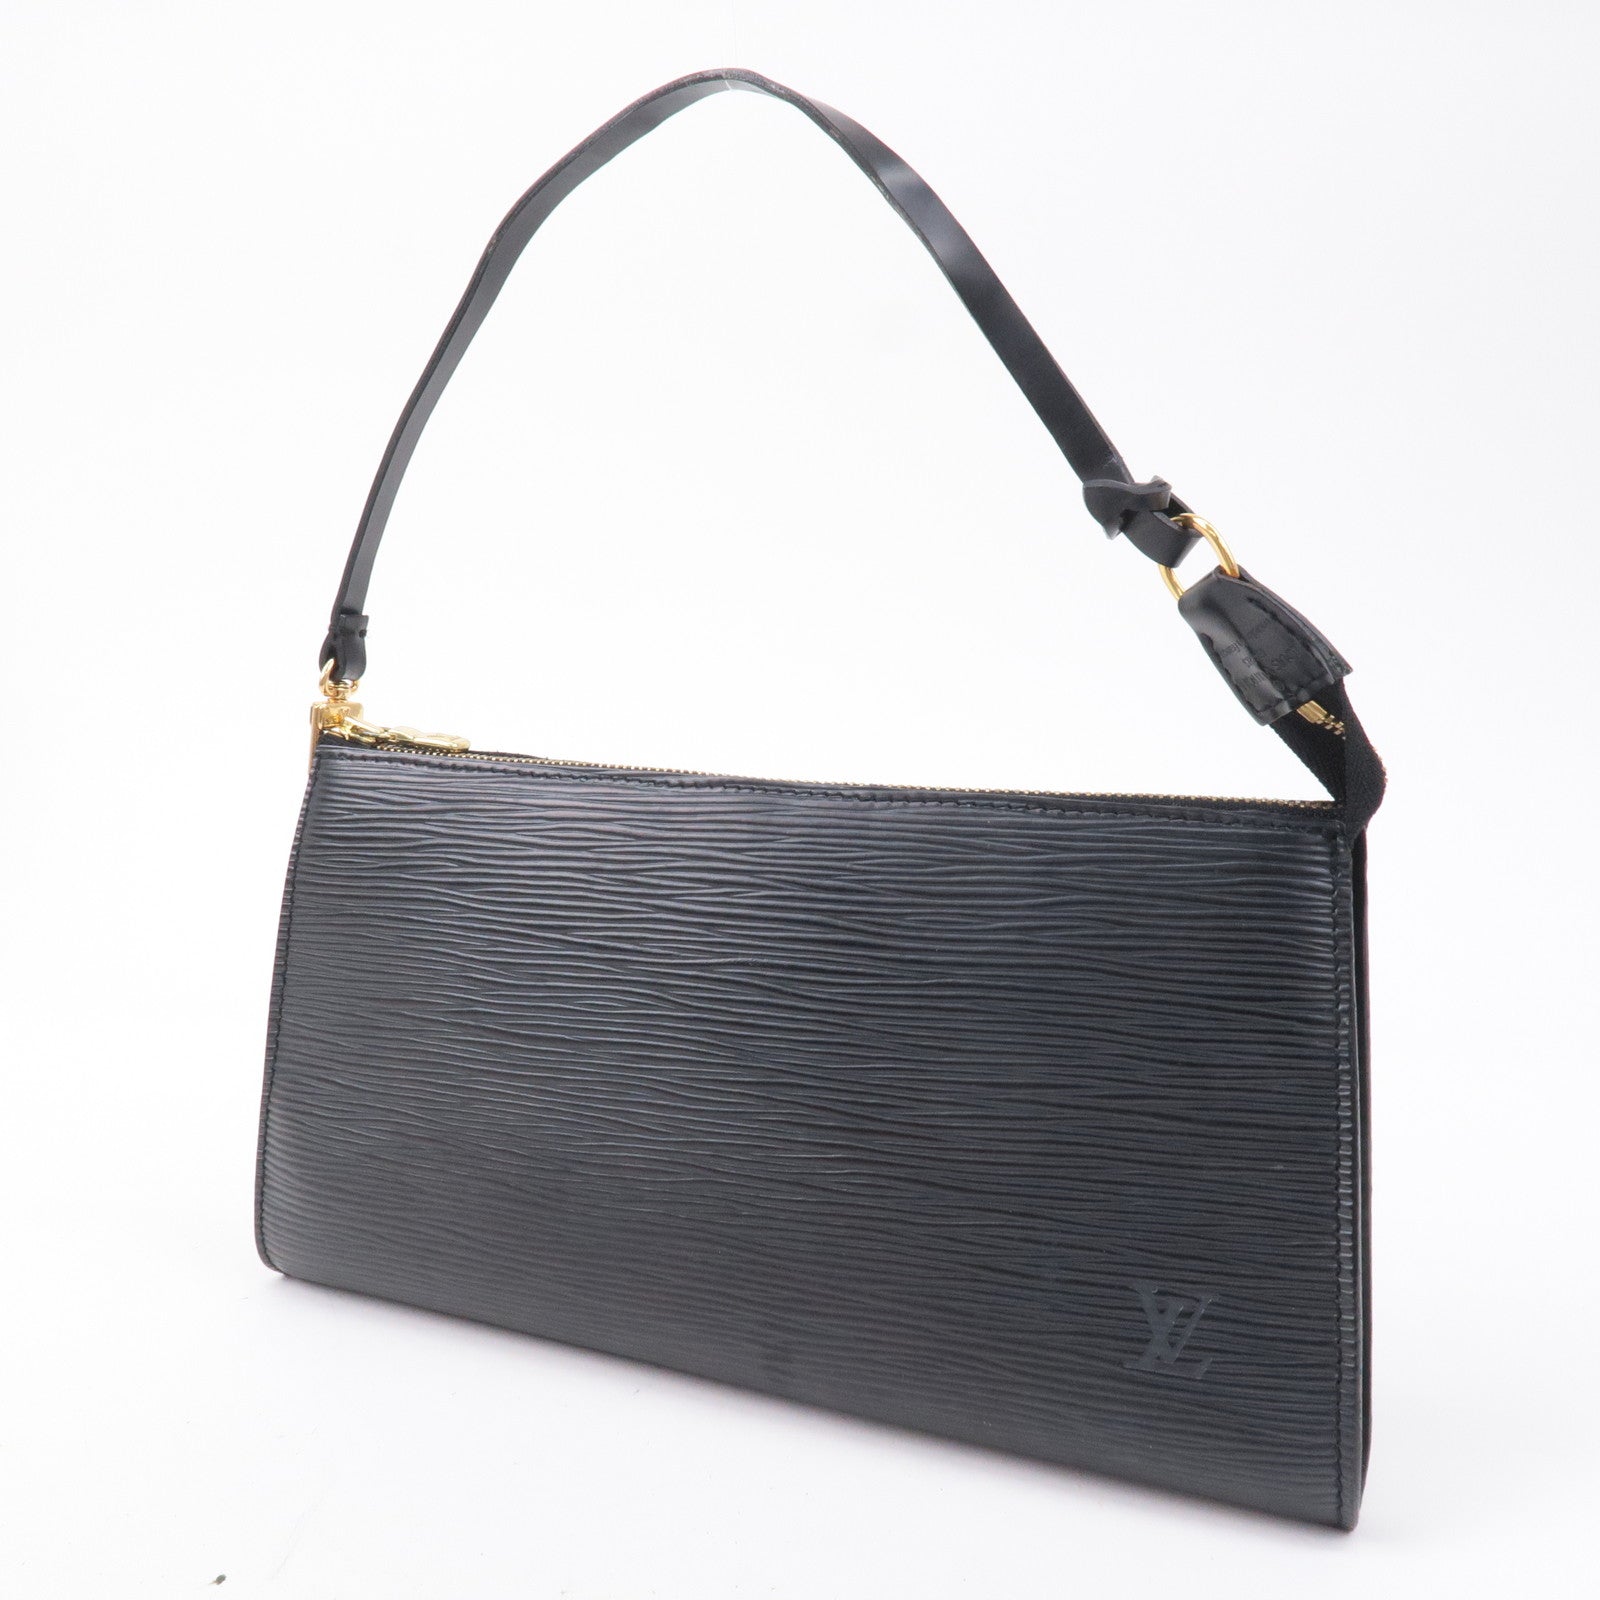 LOUIS VUITTON Noir Epi Leather Mini Pochette Bag